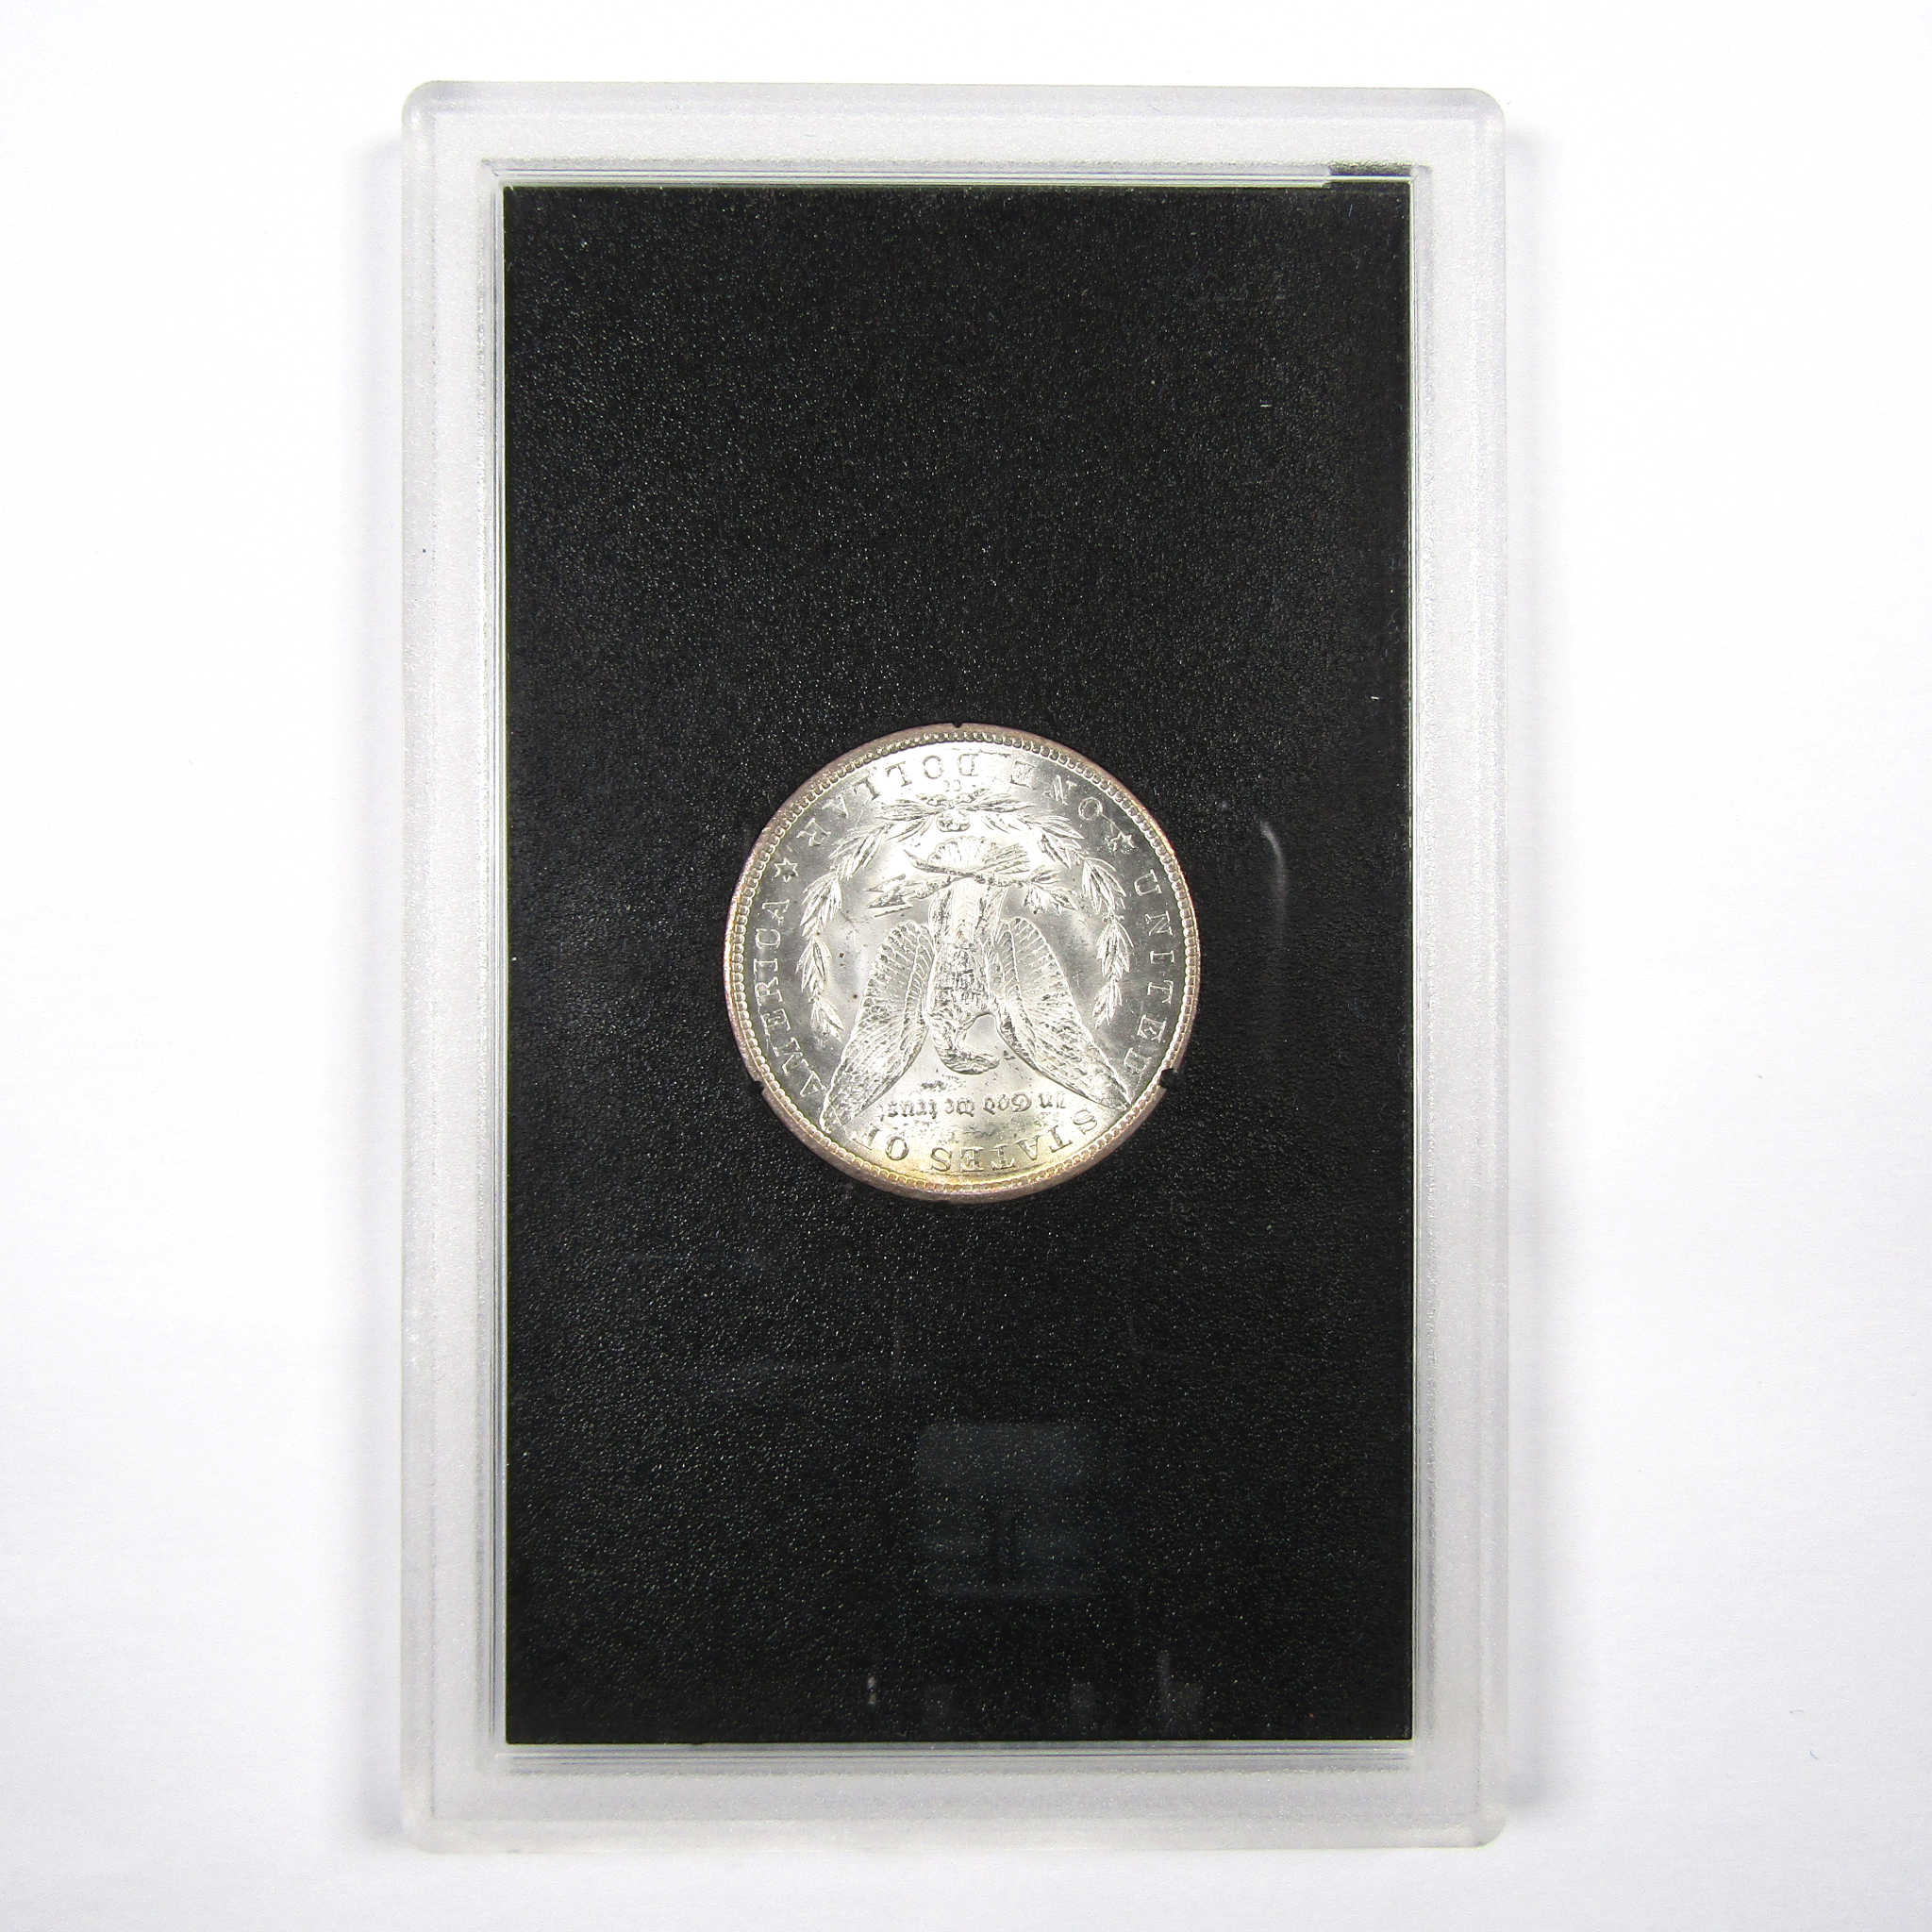 1884 CC GSA Morgan Dollar BU Uncirculated Silver $1 Coin SKU:I9299 - Morgan coin - Morgan silver dollar - Morgan silver dollar for sale - Profile Coins &amp; Collectibles